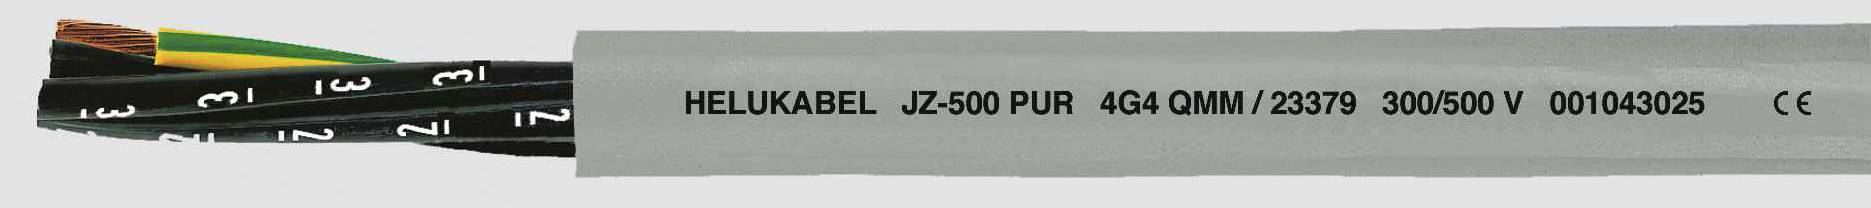 HELUKABEL JZ-500 PUR Steuerleitung 7 G 1 mm² Grau 23351-1000 1000 m